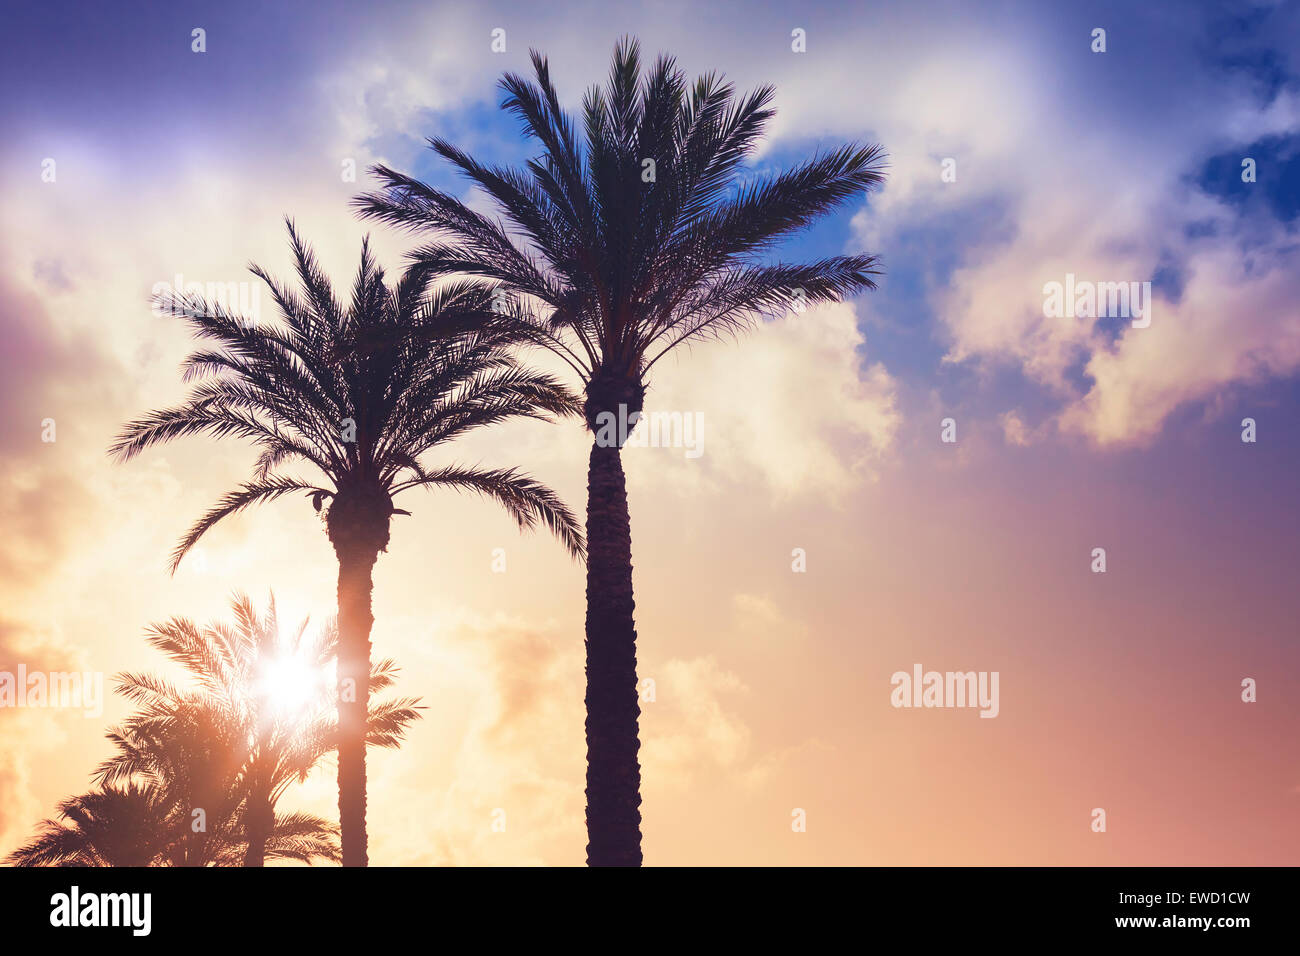 Palmen und strahlende Sonne über bewölktem Himmelshintergrund. Vintage-Stil. Foto mit bunten getönten Filterwirkung Stockfoto